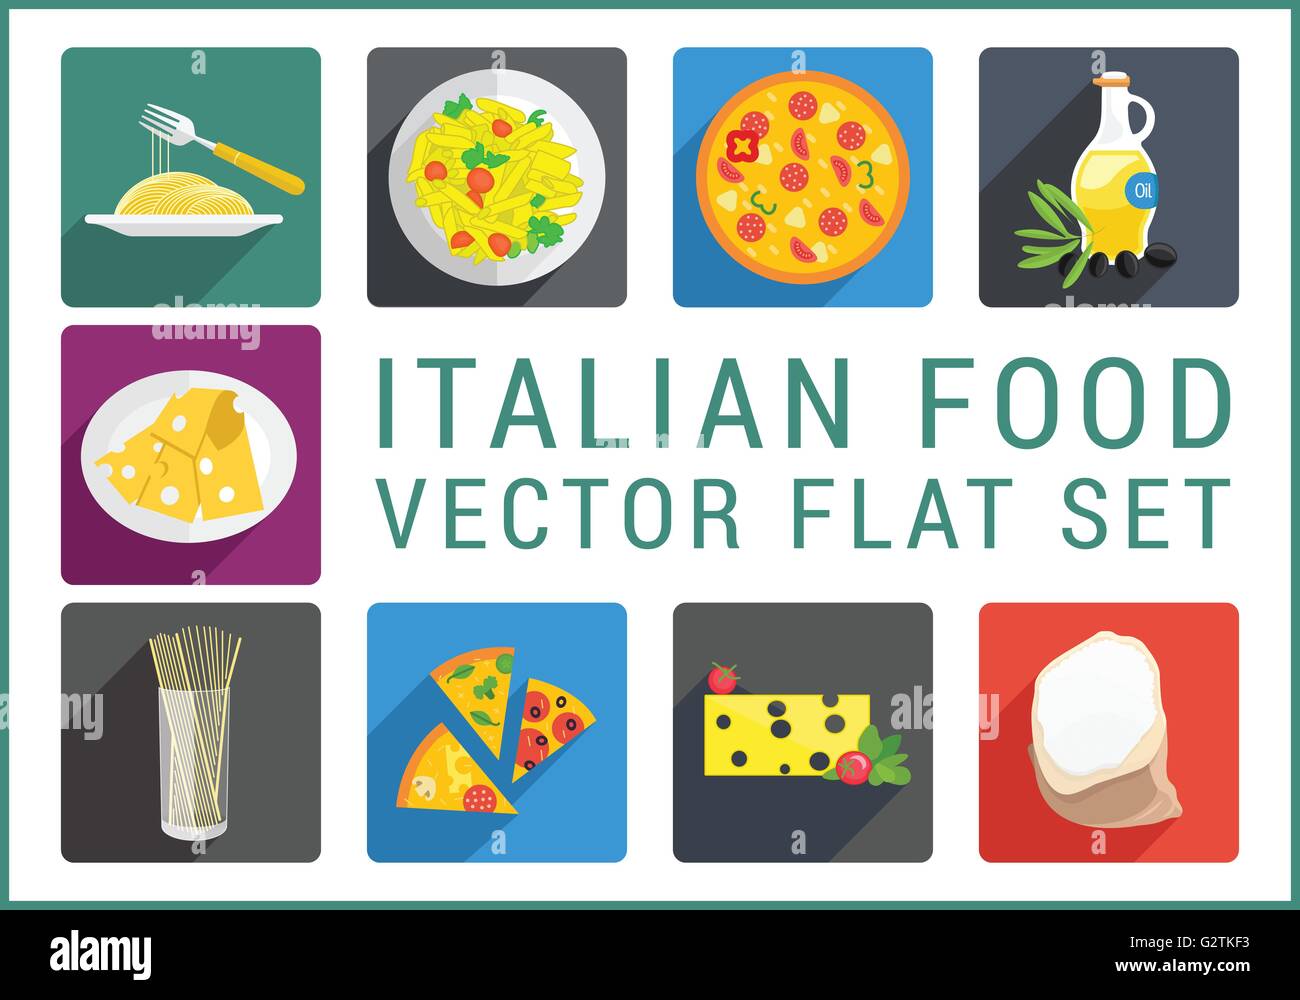 Italian food flat vector icons Stock Vector